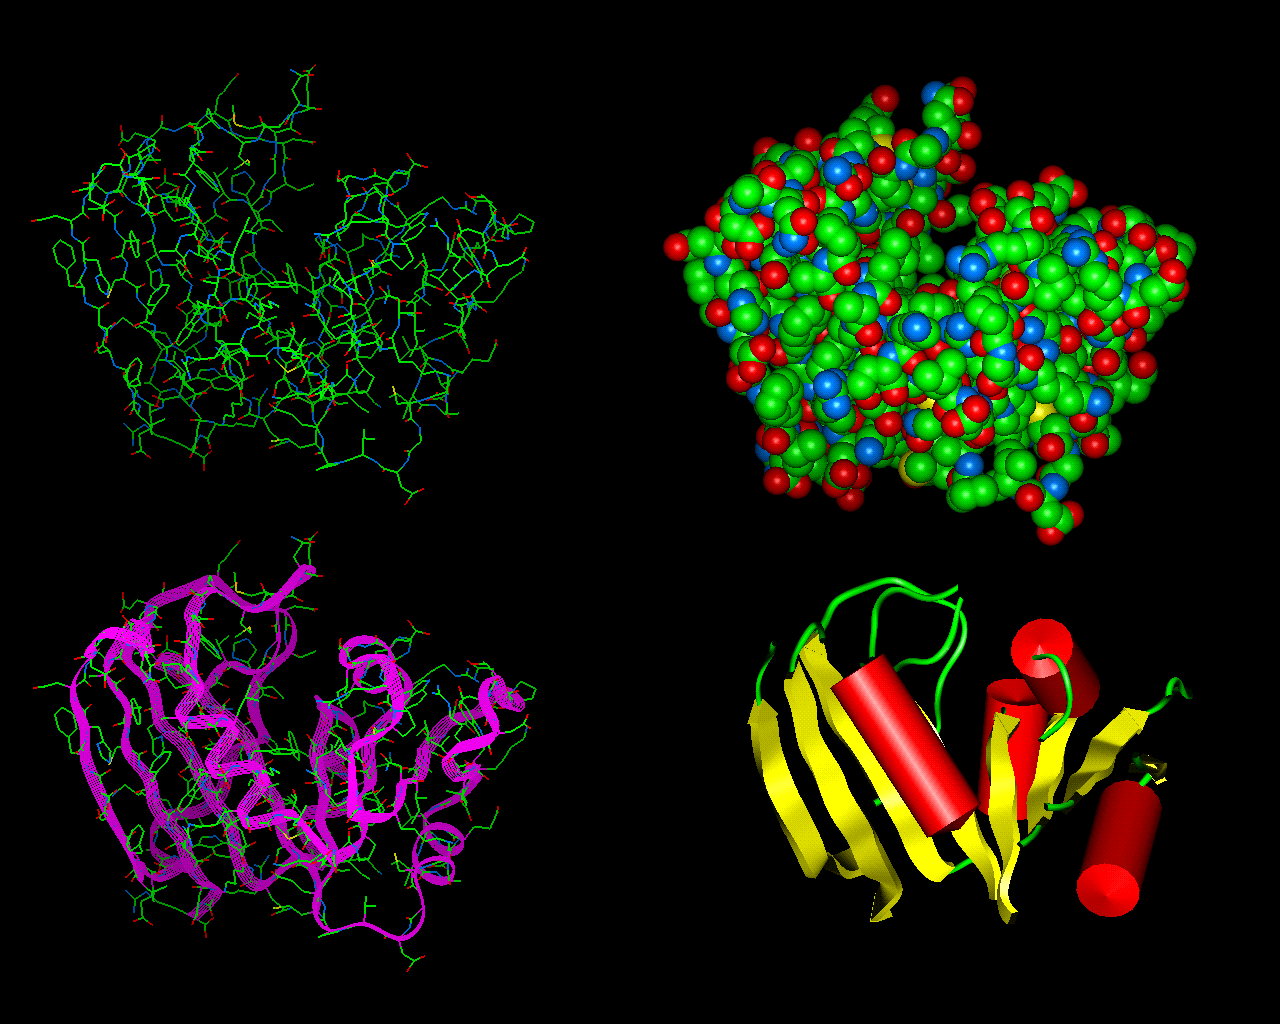 ΜΕΛΕΤΗ ΔΟΜΗΣ ΠΡΩΤΕΪΝΩΝ ΜΕ ΤΗ ΒΟΗΘΕΙΑ ΤΟΥ CD Οι πρωτεΐνες έχουν μοναδικές διαμορφώσεις που αποτελούνται από α-έλικες και β-πτυχωτές επιφάνειες.